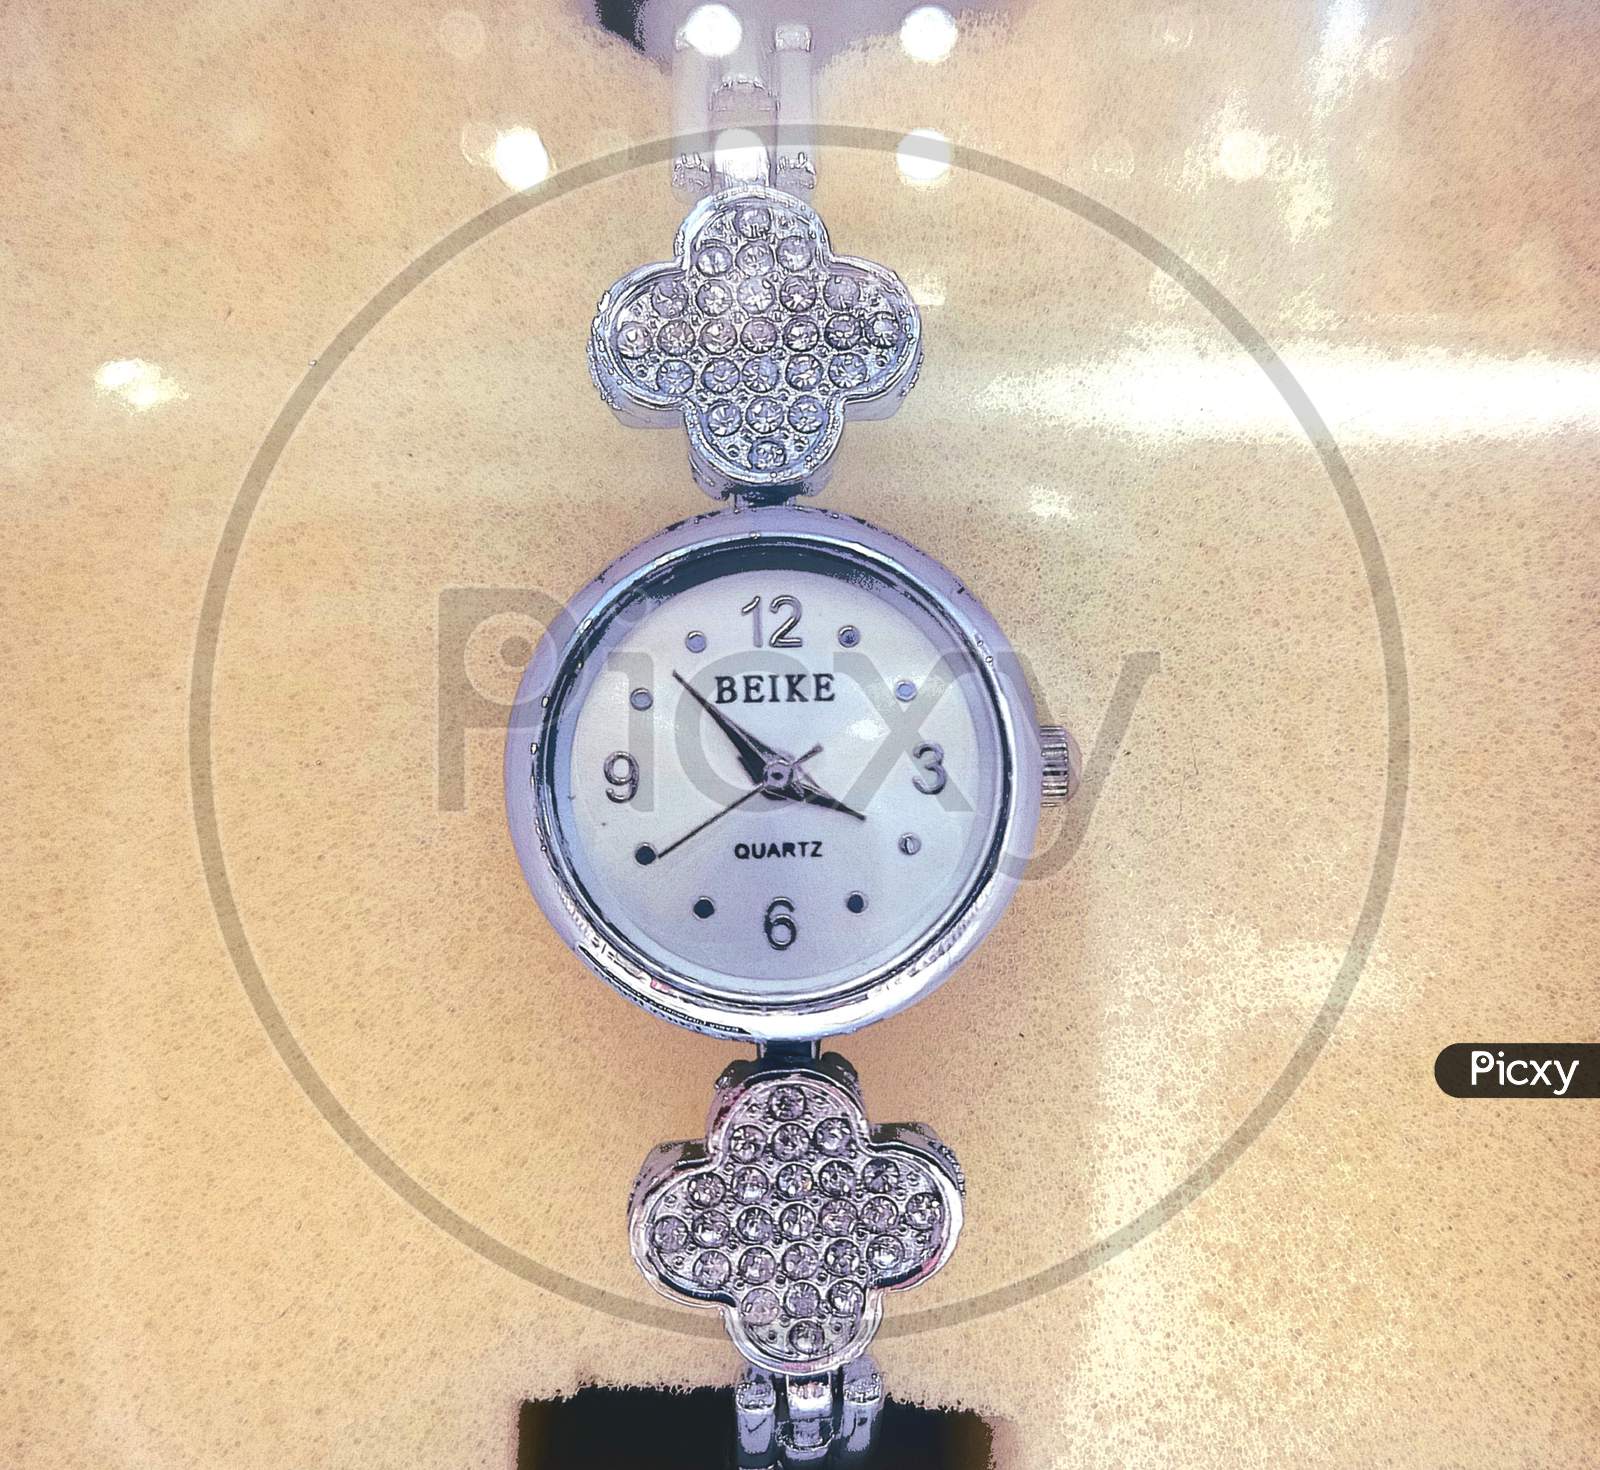 Beike Quartz Ladies Wrist Watch | eBay